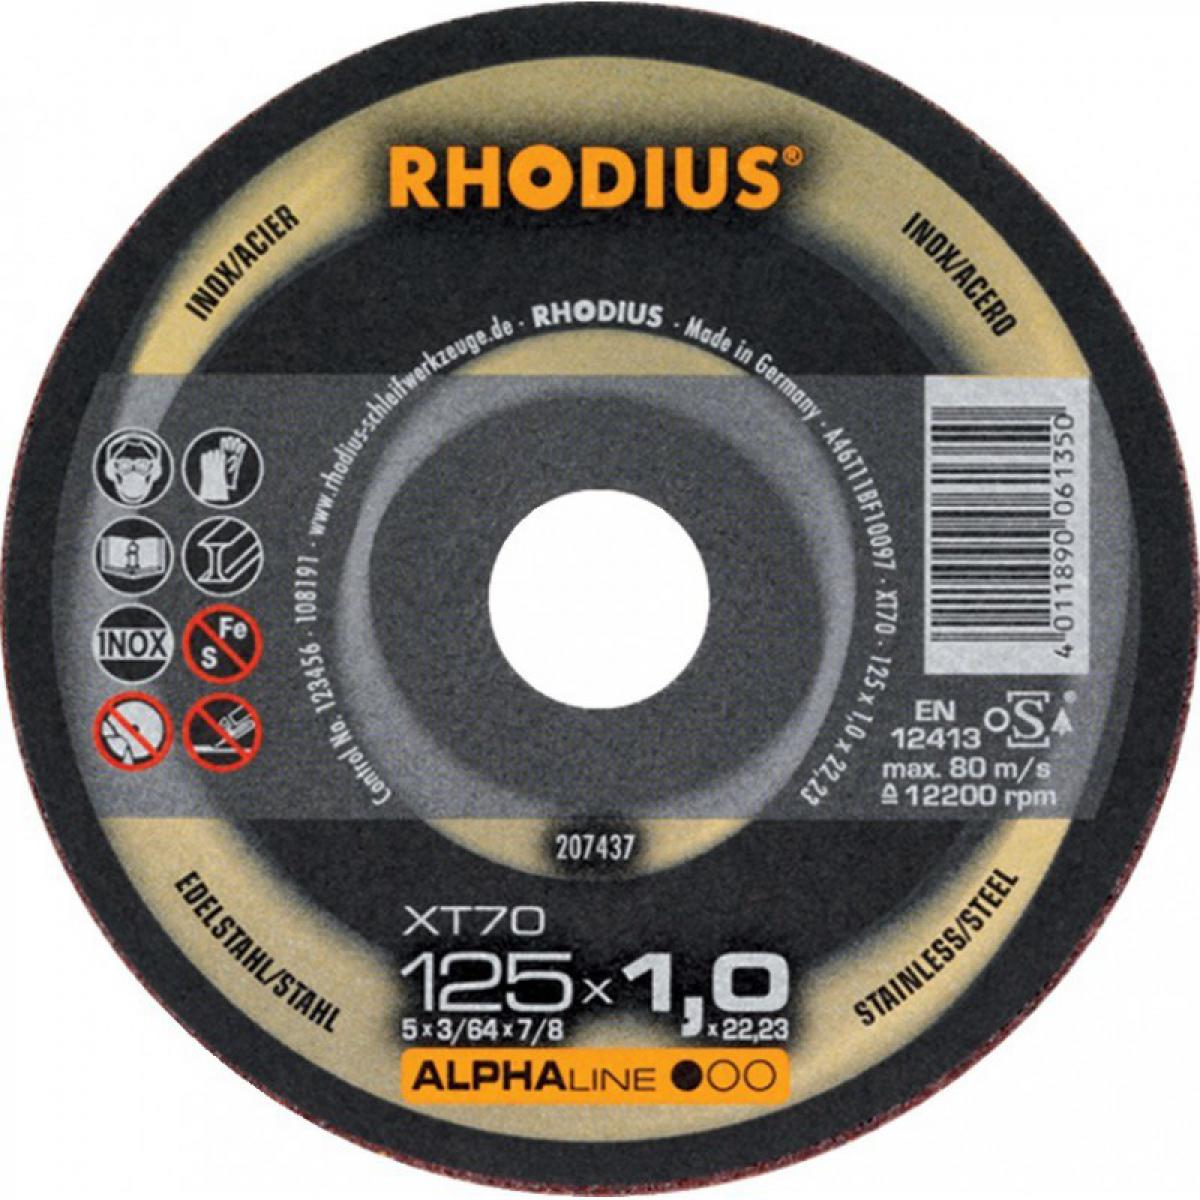 Rhodius - Disque à tronconner acier / inox XT70 115 x 1,0mm ger. Rhodius - Outils de coupe